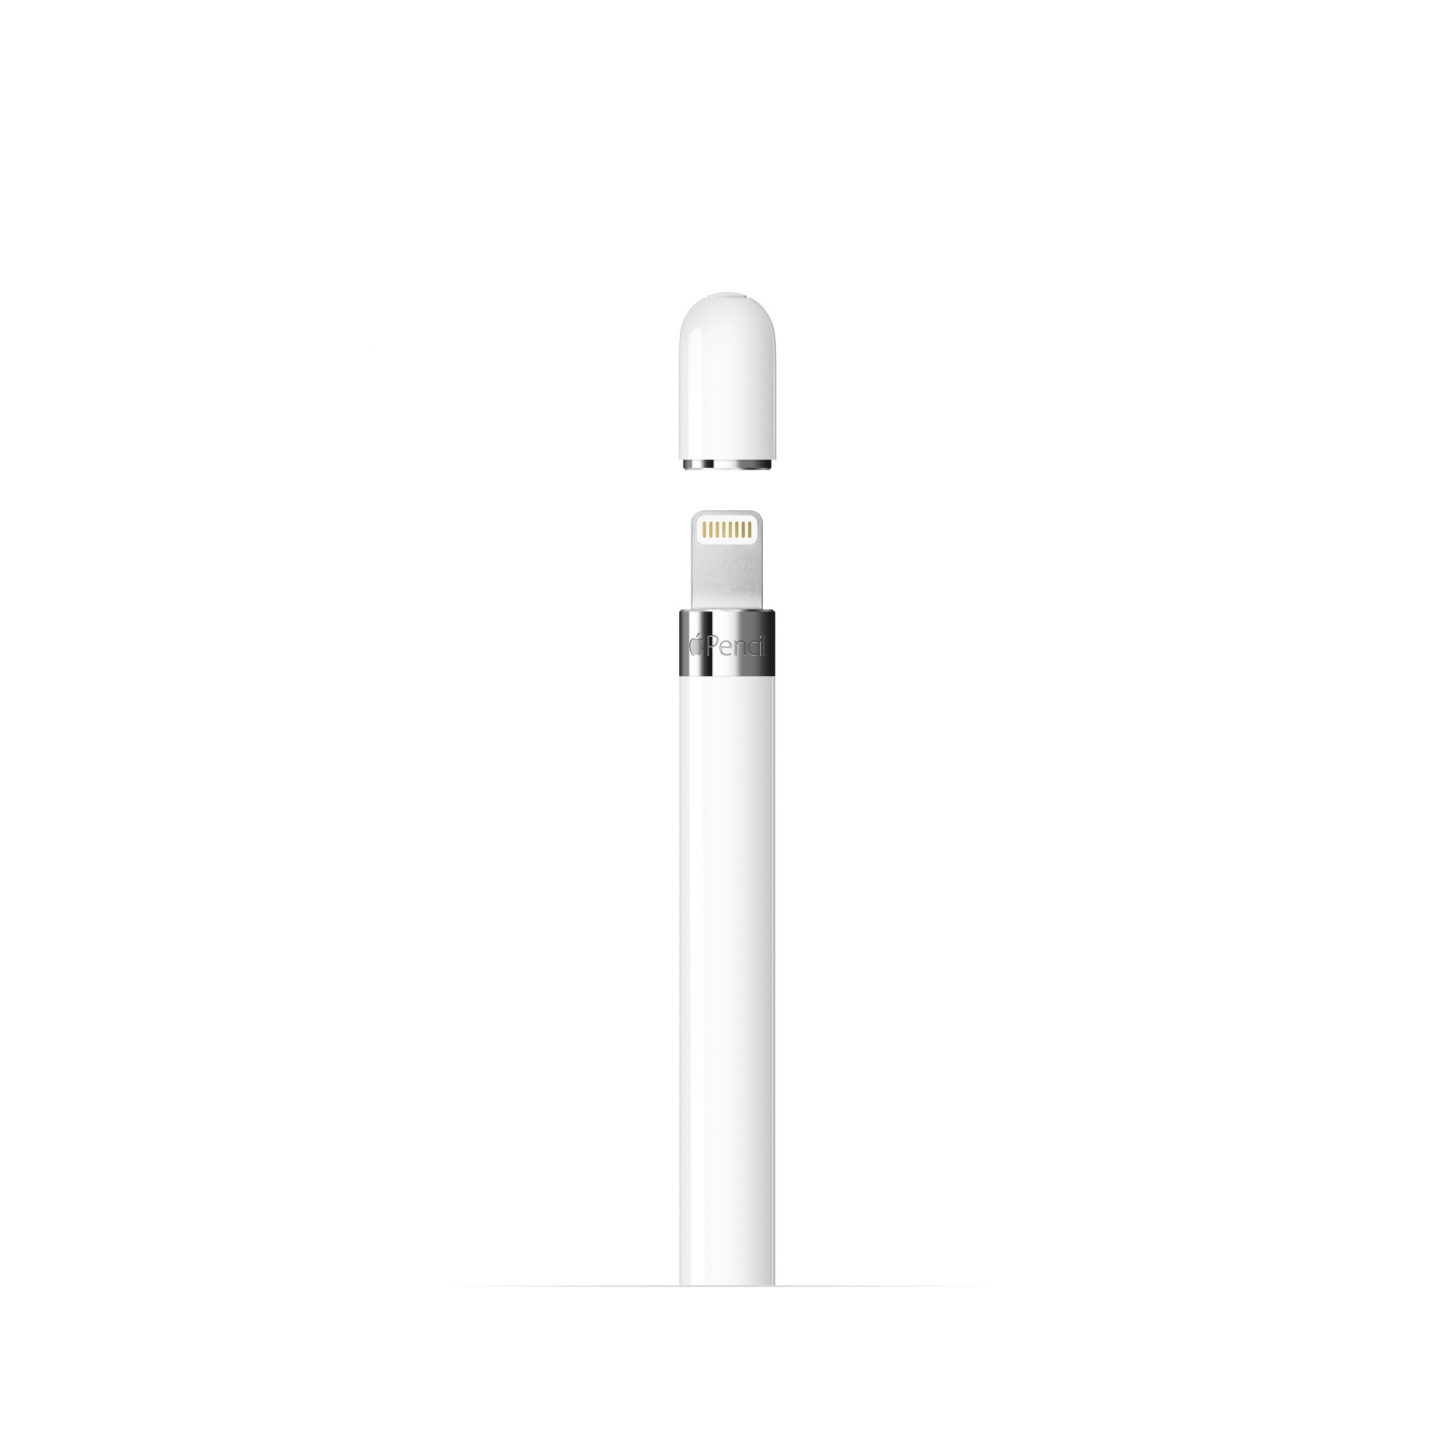 Compatibilidade do Apple Pencil com o iPad (USB-C)